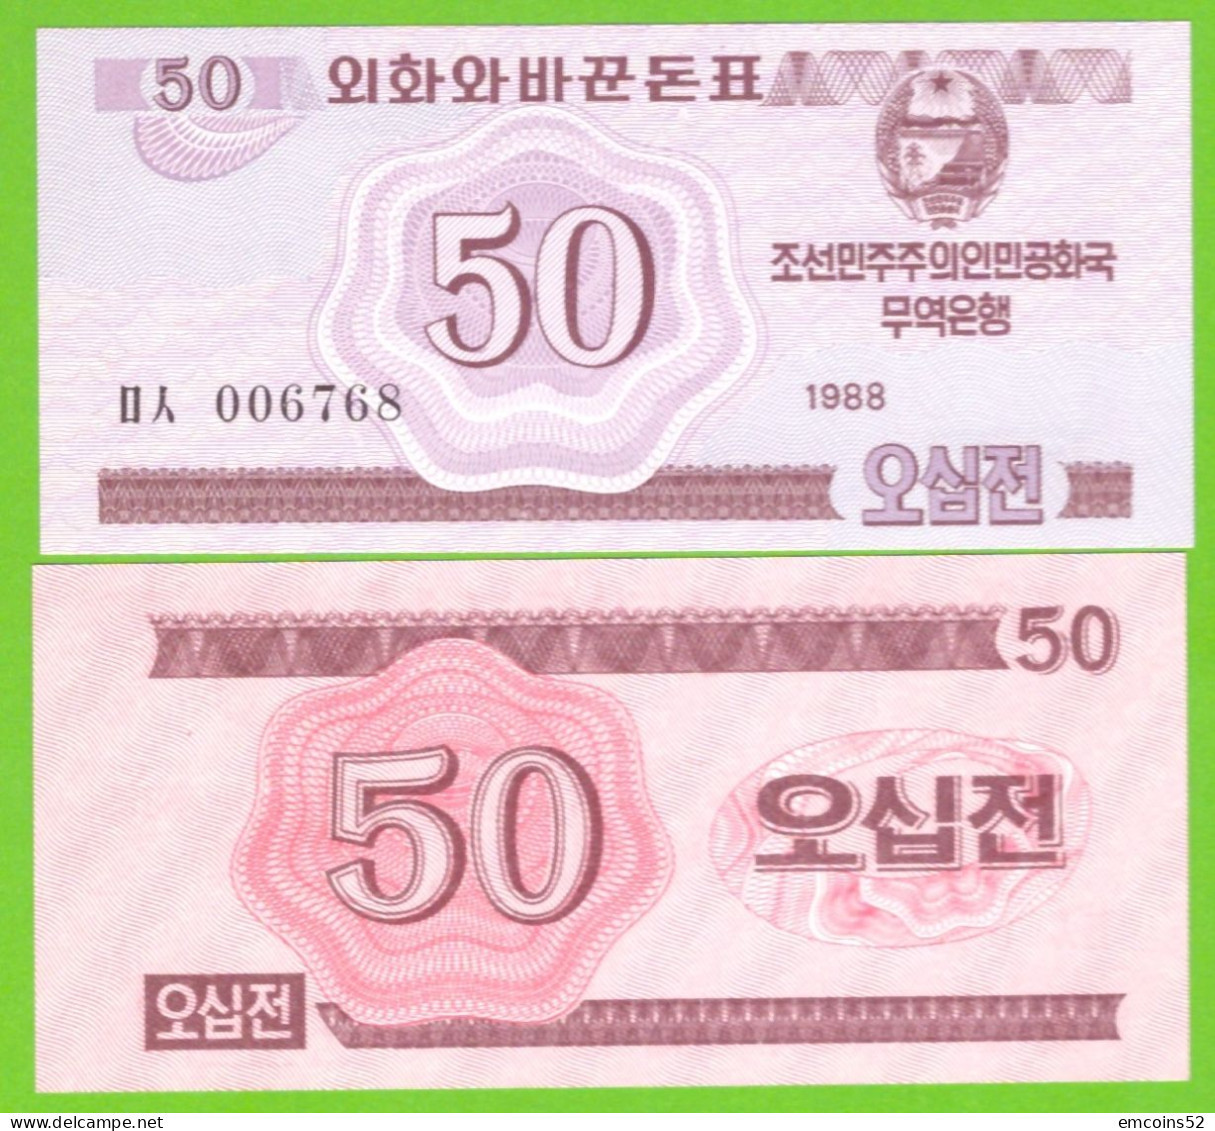 KOREA NORTH 50 CHON 1988 P-34 UNC - Corée Du Nord